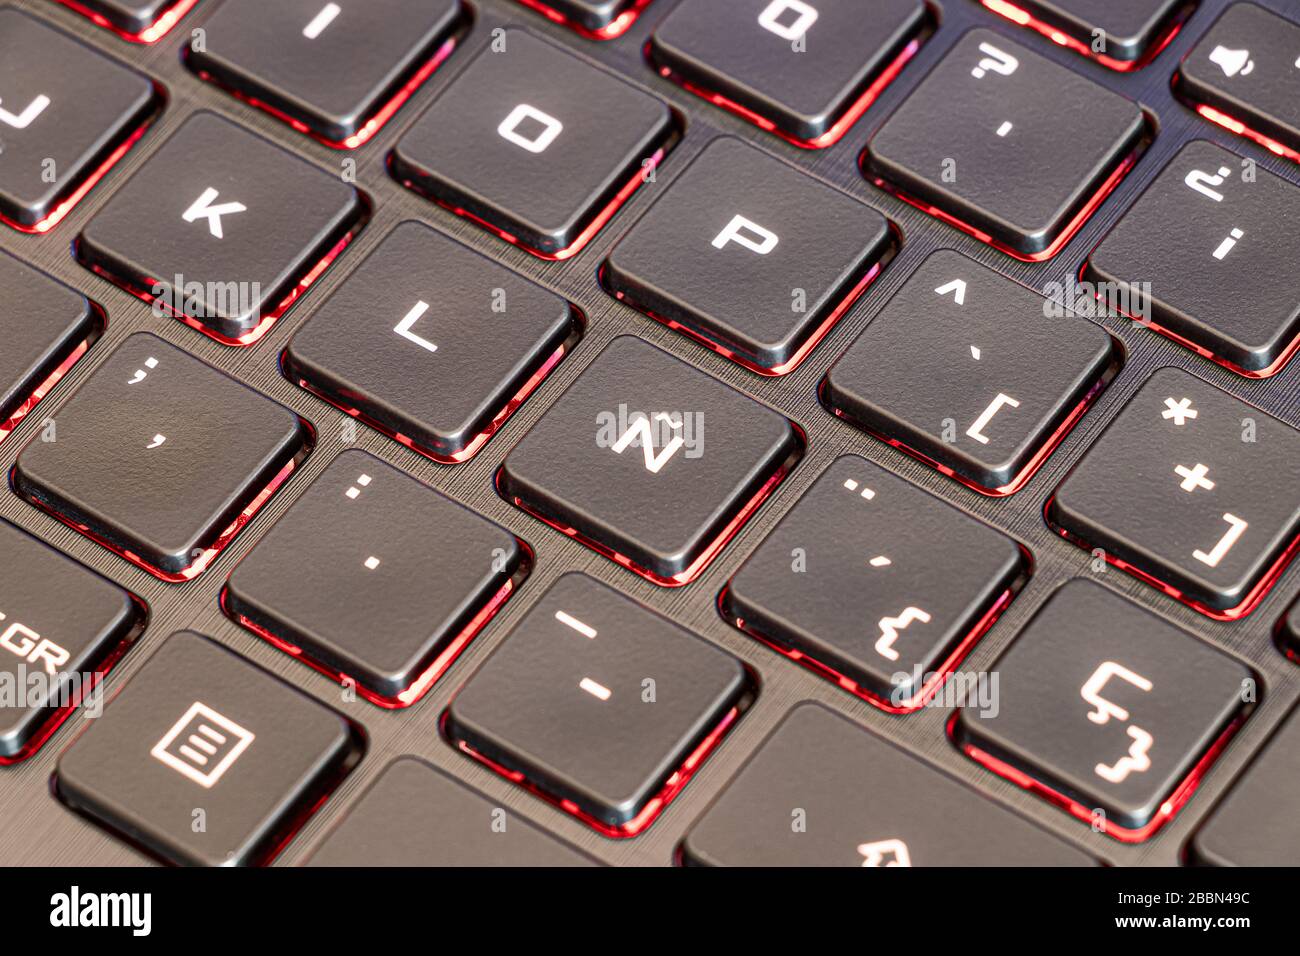 Tastiera spagnola portatile messo a fuoco nella lettera caratteristica Ñ  dell'alfabeto spagnolo e con i tasti illuminati Foto stock - Alamy